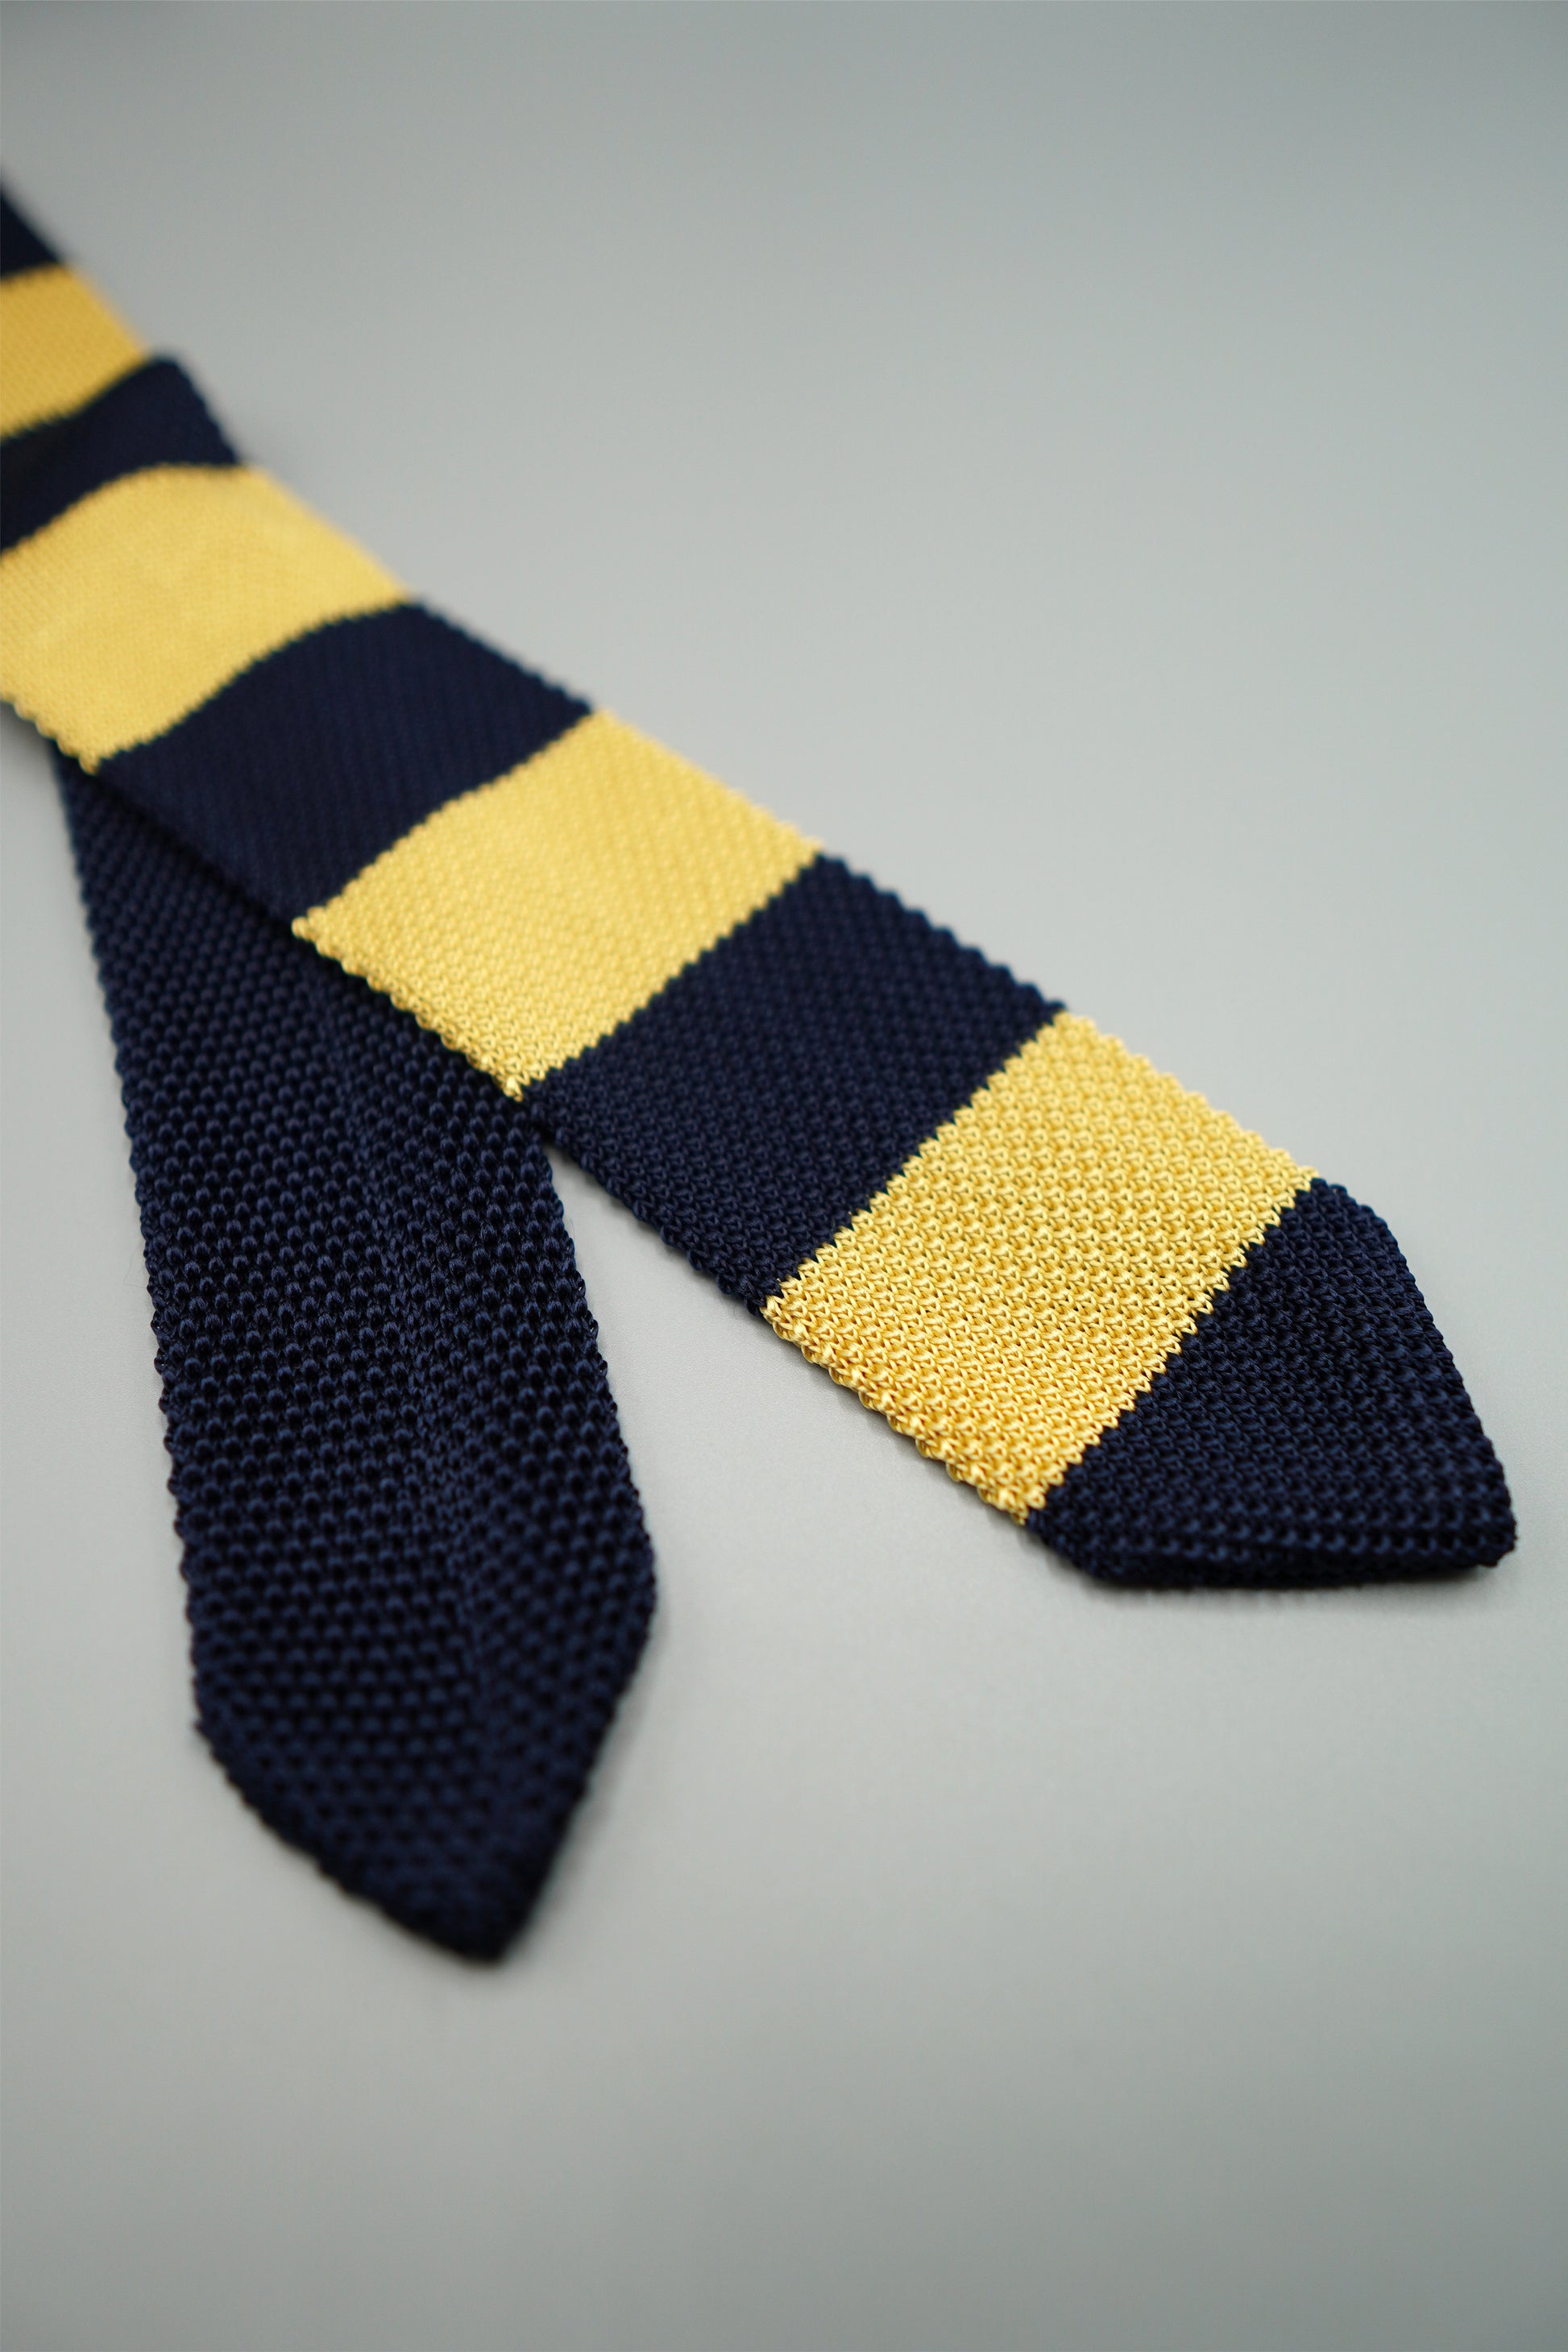 the paris silk knit tie angled